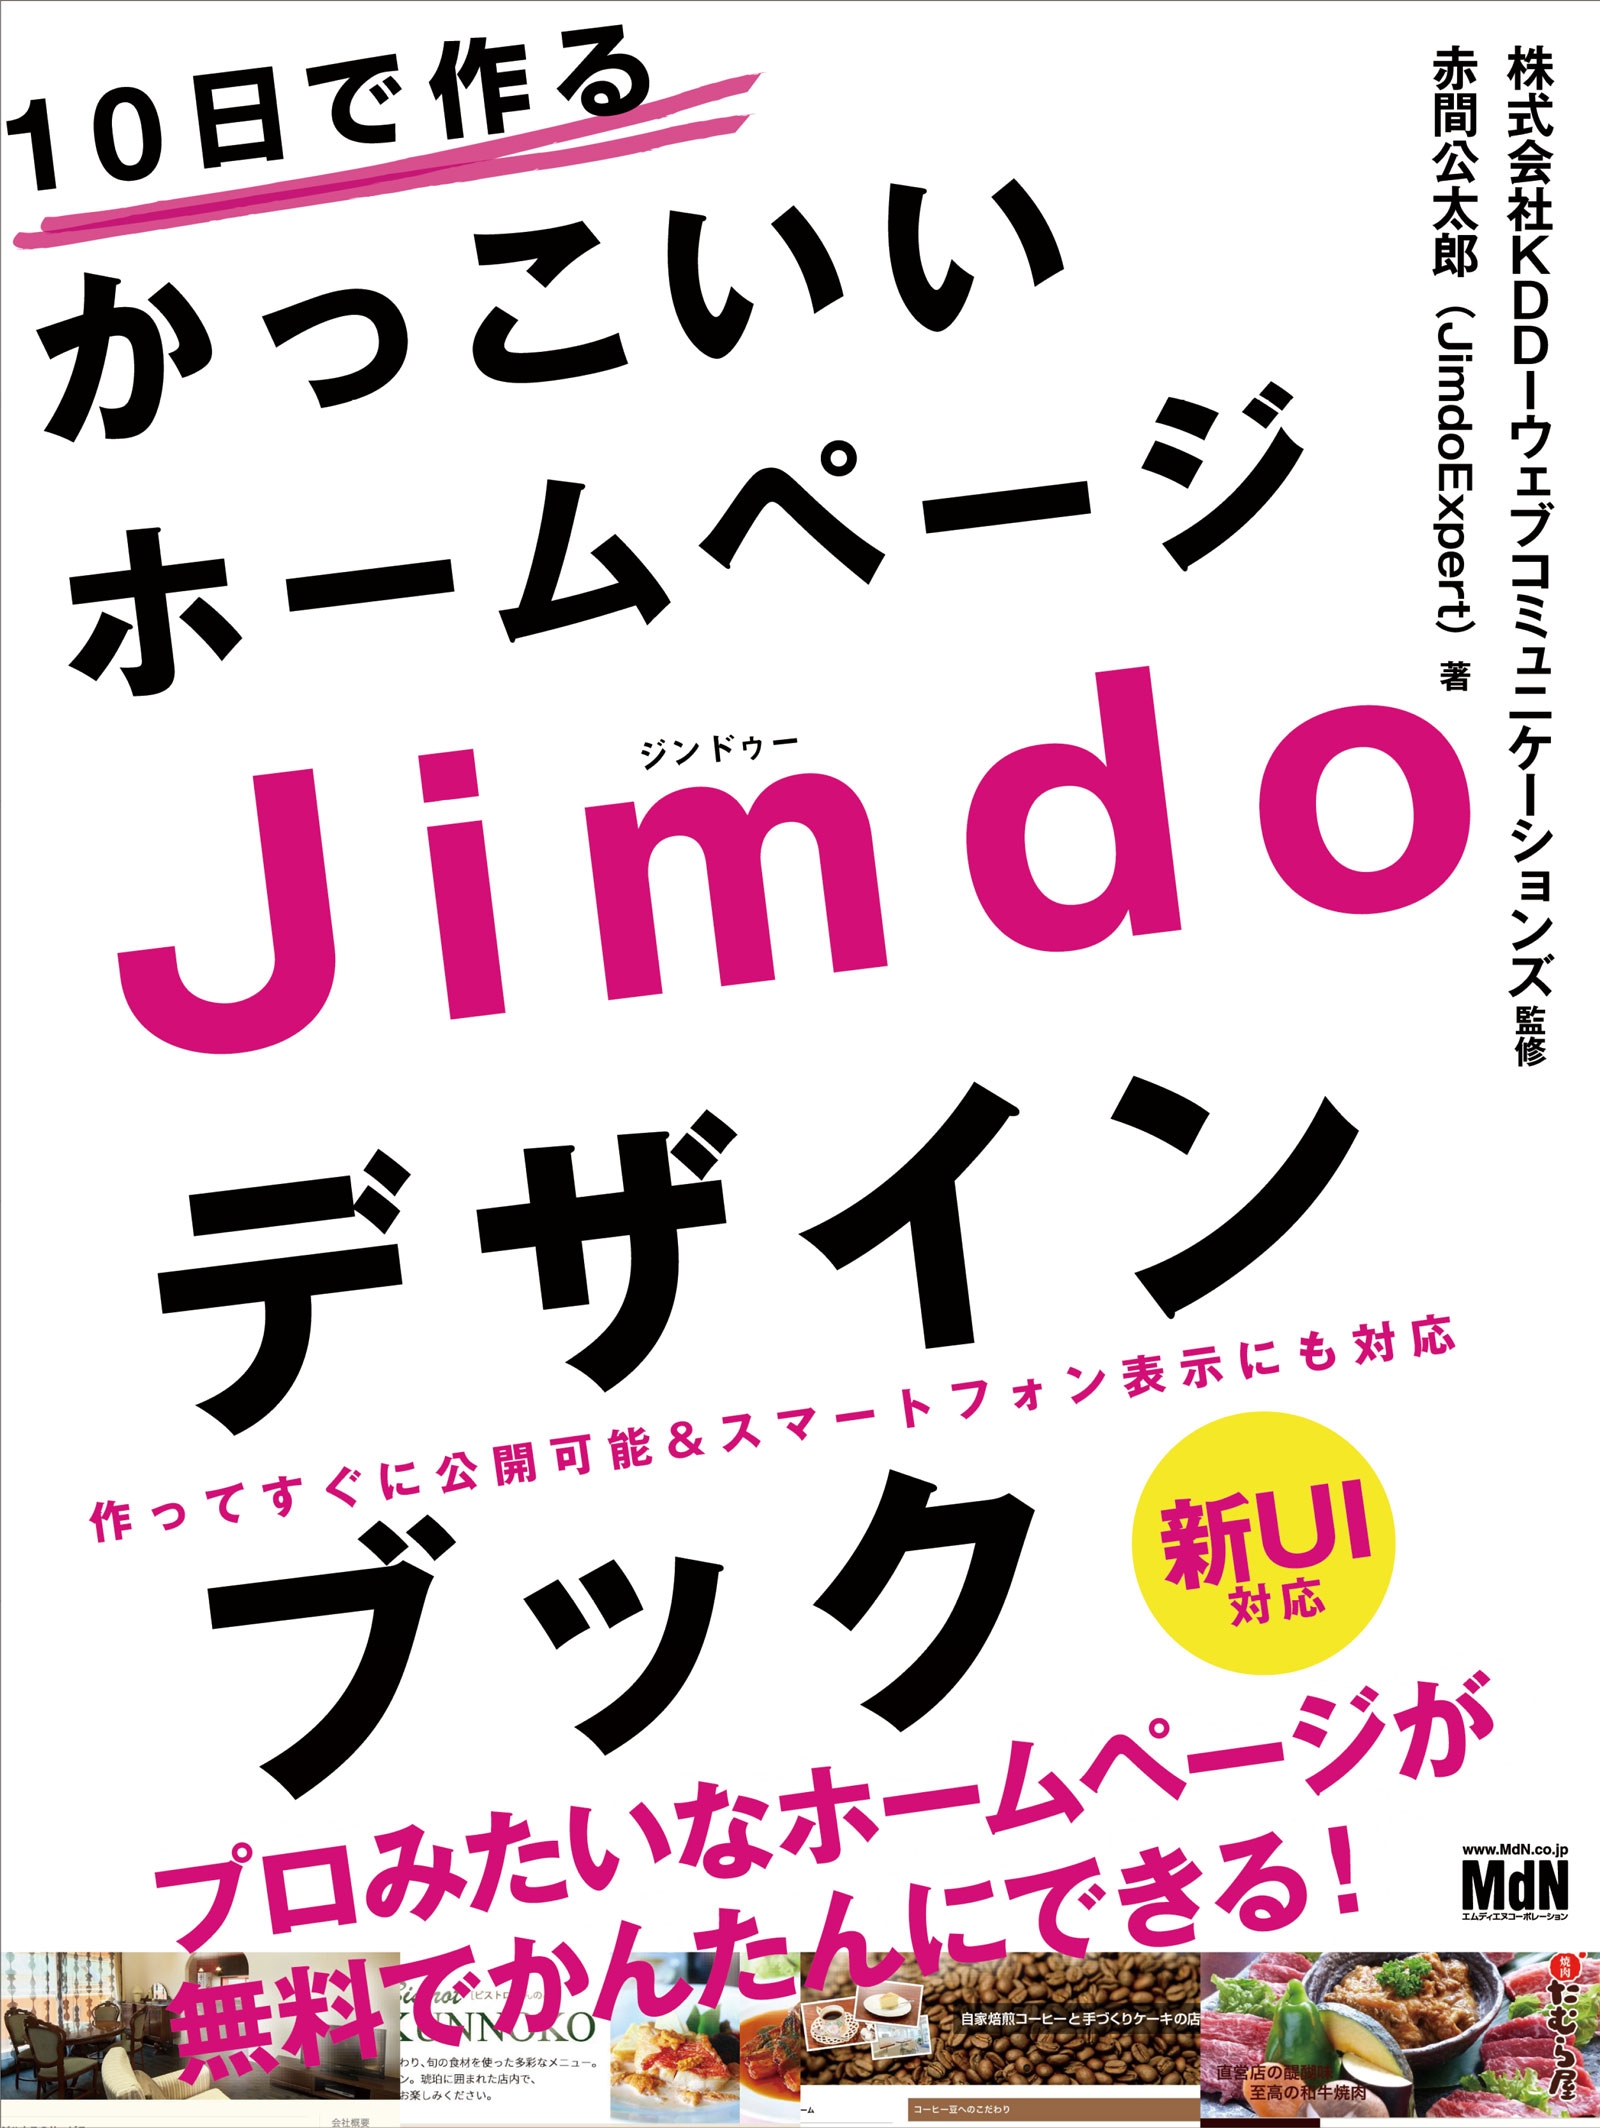 10日で作るかっこいいホームページ Jimdoデザインブック - KDDIウェブ